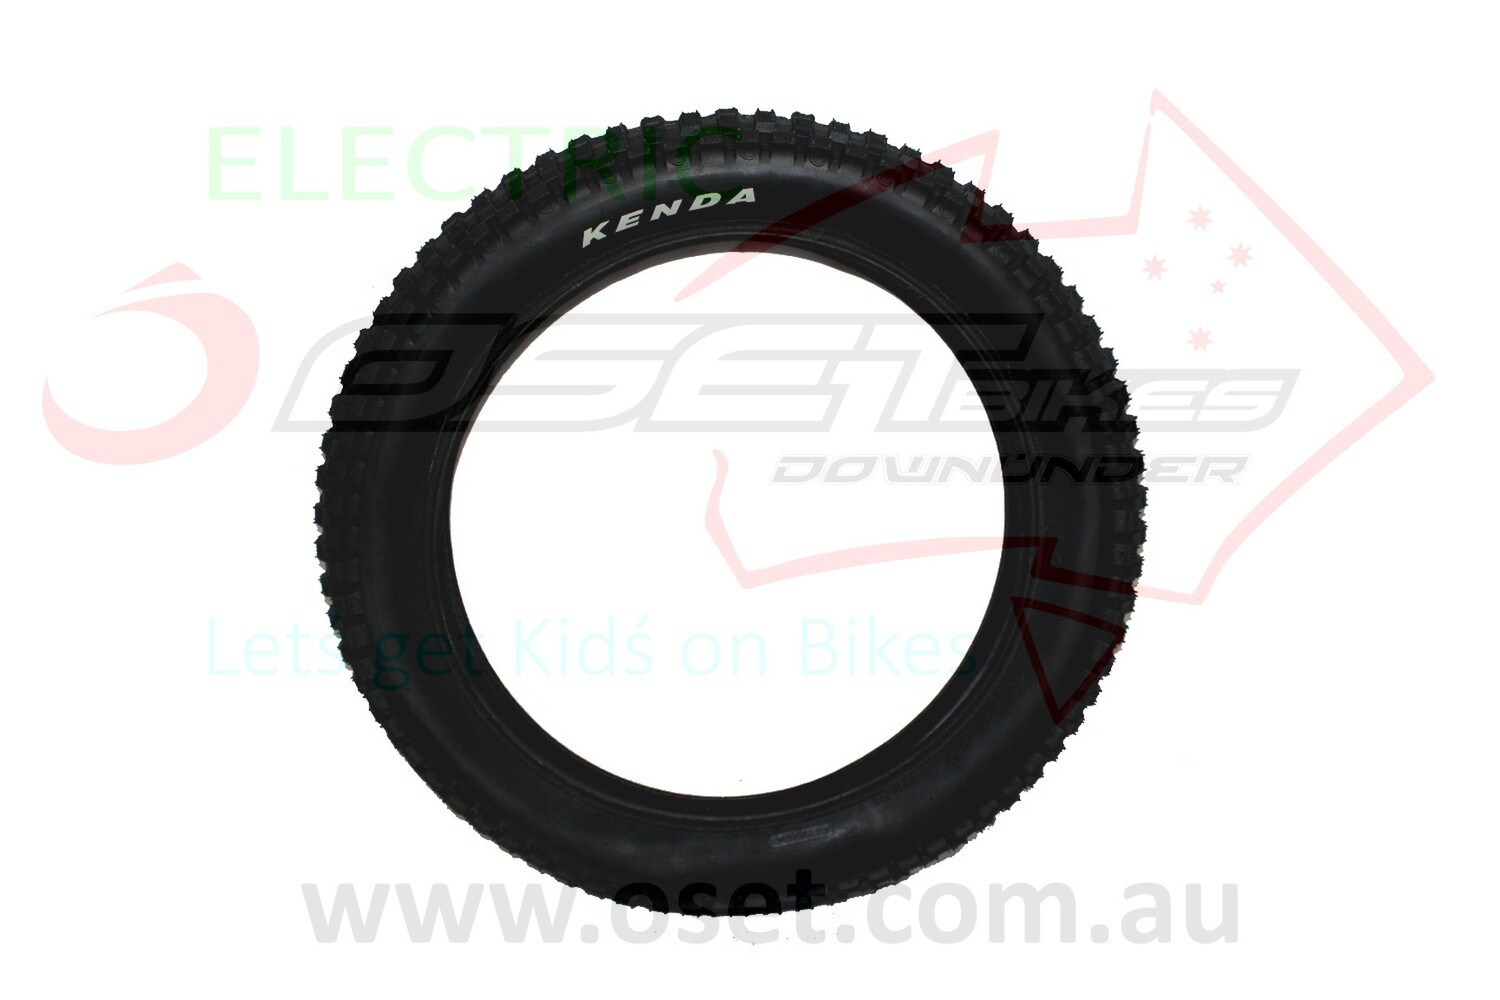 Tyre Rear Kenda 16"x2.7" for 16E,R